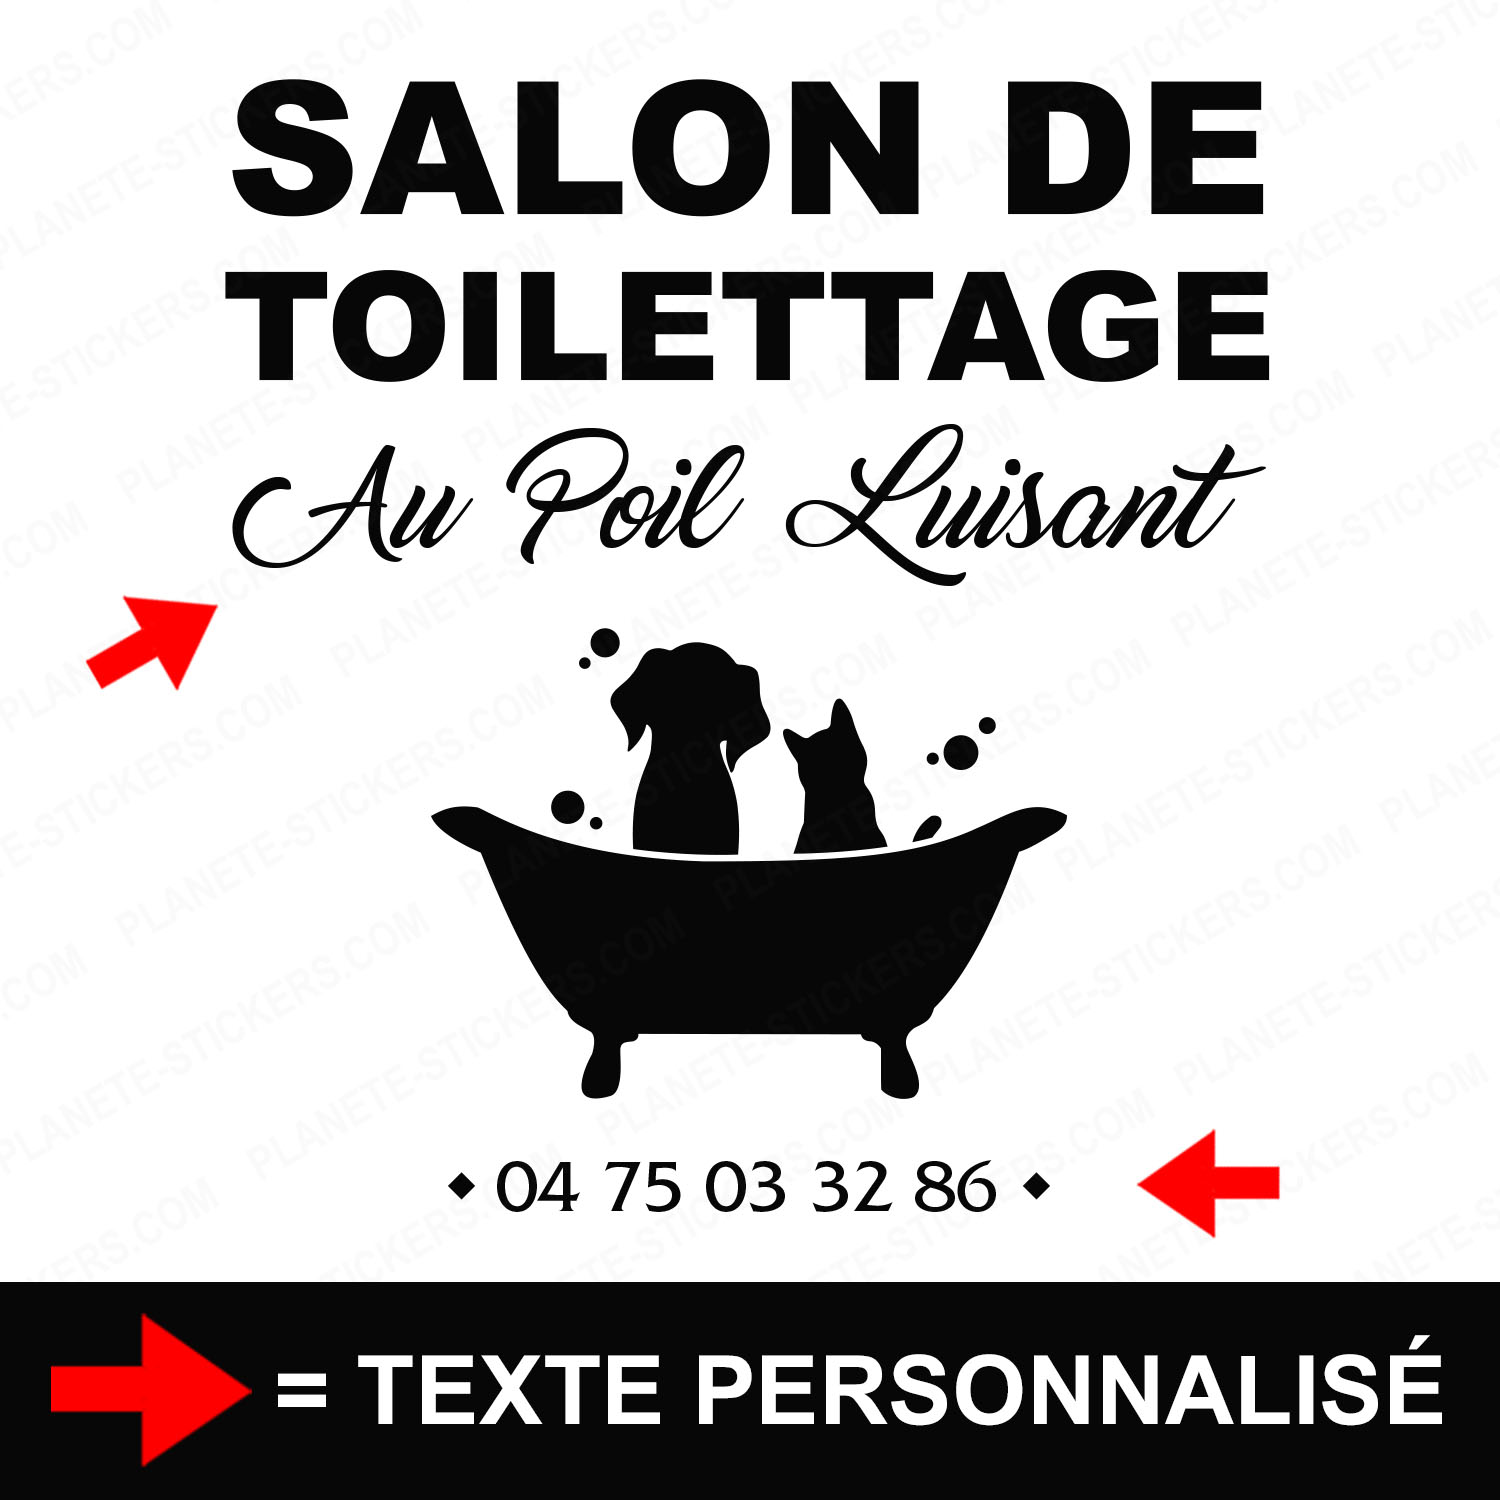 ref4salondetoilettagevitrine-stickers-salon-de-toilettage-vitrine-sticker-personnalisé-autocollant-toiletteur-pro-vitre-professionnel-logo-chien-chat-2